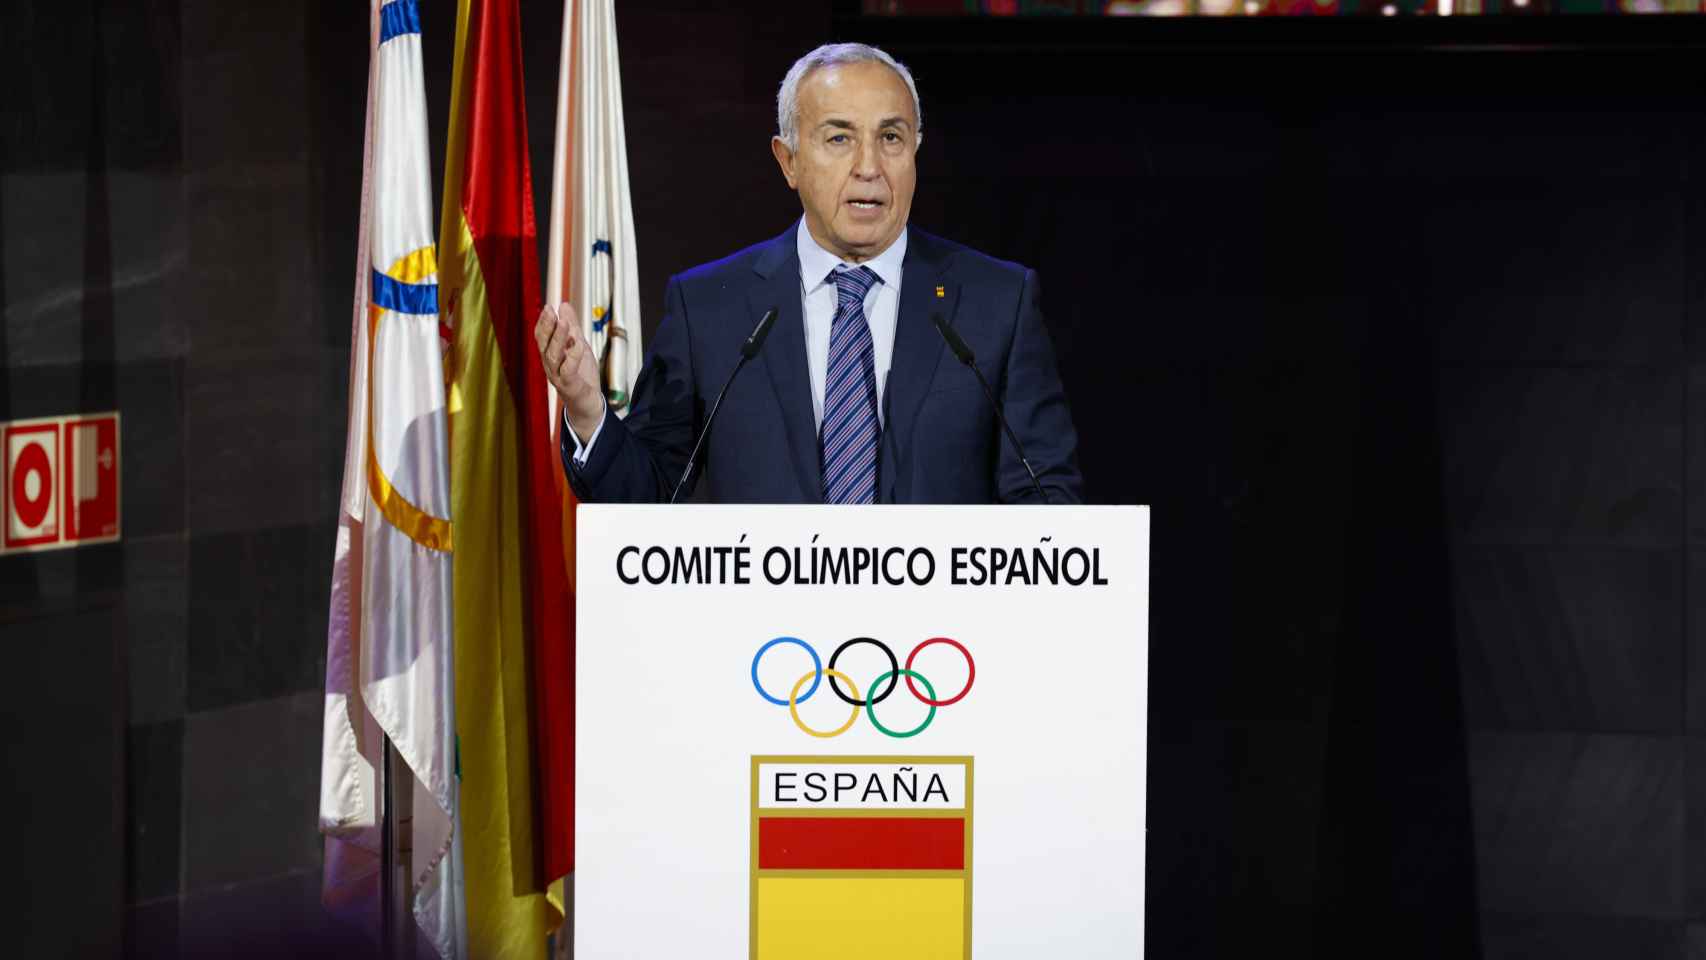 El presidente del COE Alejandro Blanco pronuncia un discurso en la XVIII Gala del COE.